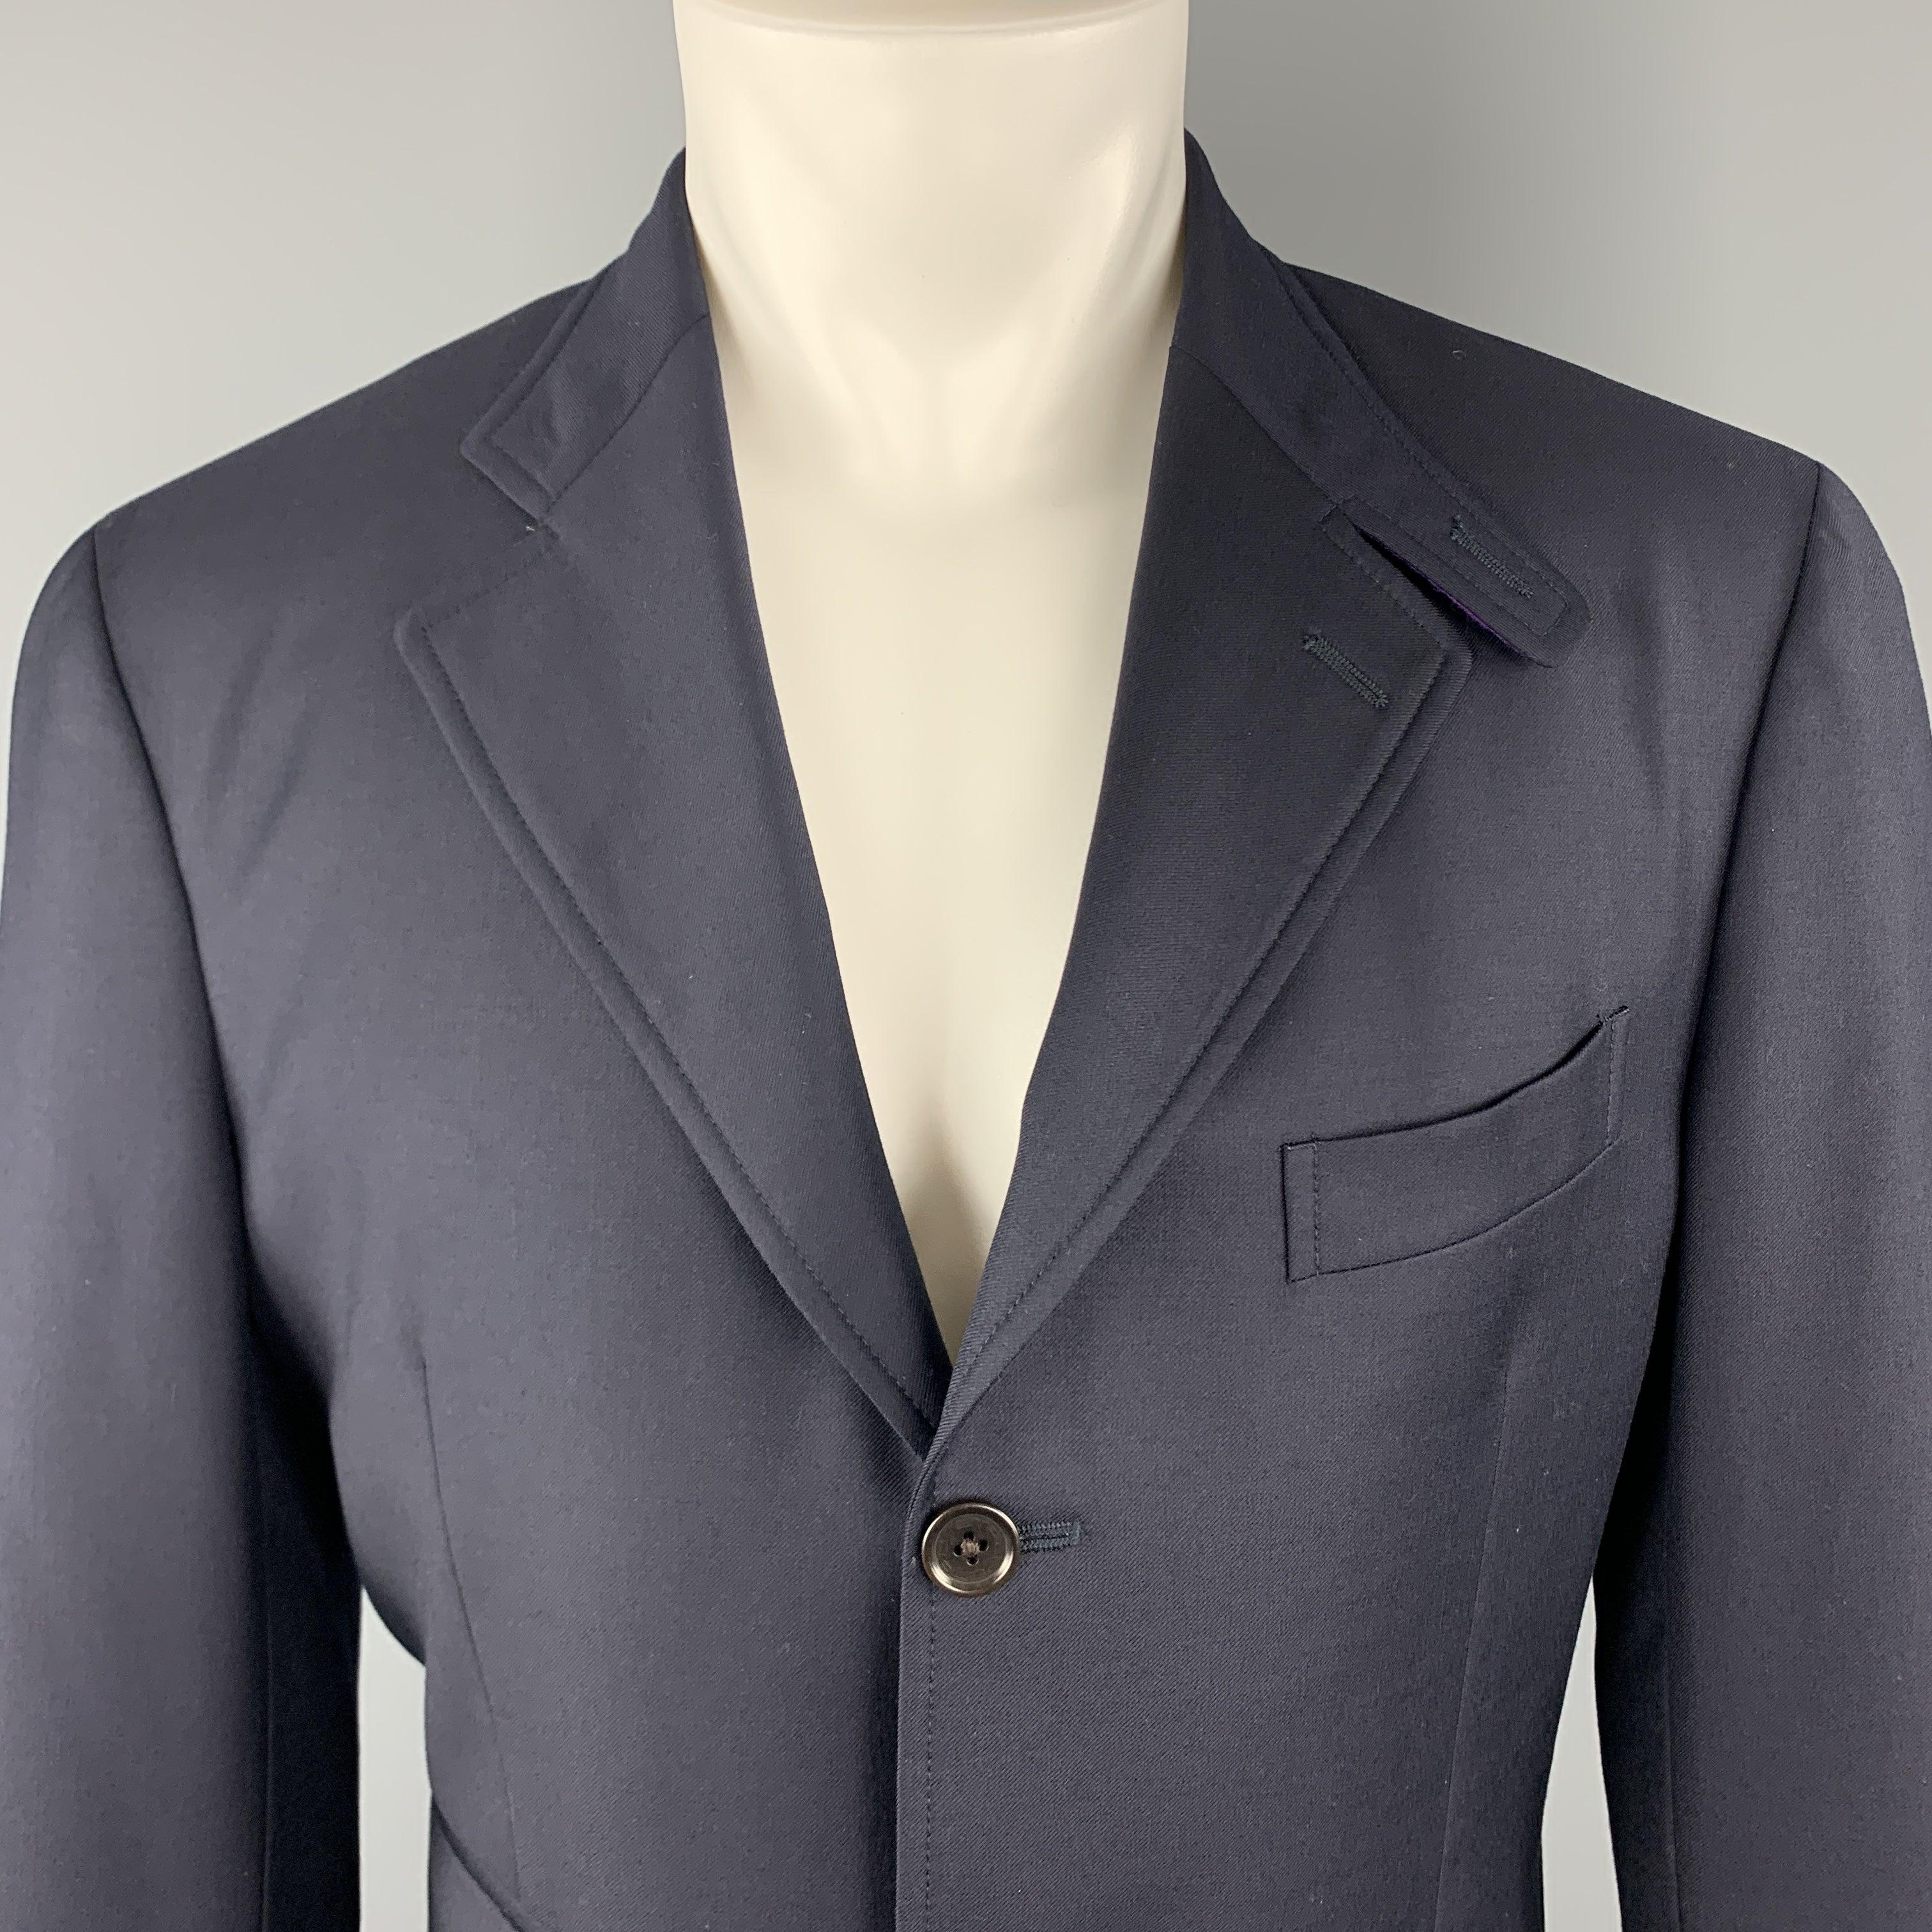 ETRO
Ce manteau de sport en sergé de laine marine est doté d'un revers à patte crantée, d'un simple boutonnage, de trois boutons sur le devant et d'une doublure de col de couleur violette. Fabriqué en Italie. Excellent état. 

Marqué :   IT 50